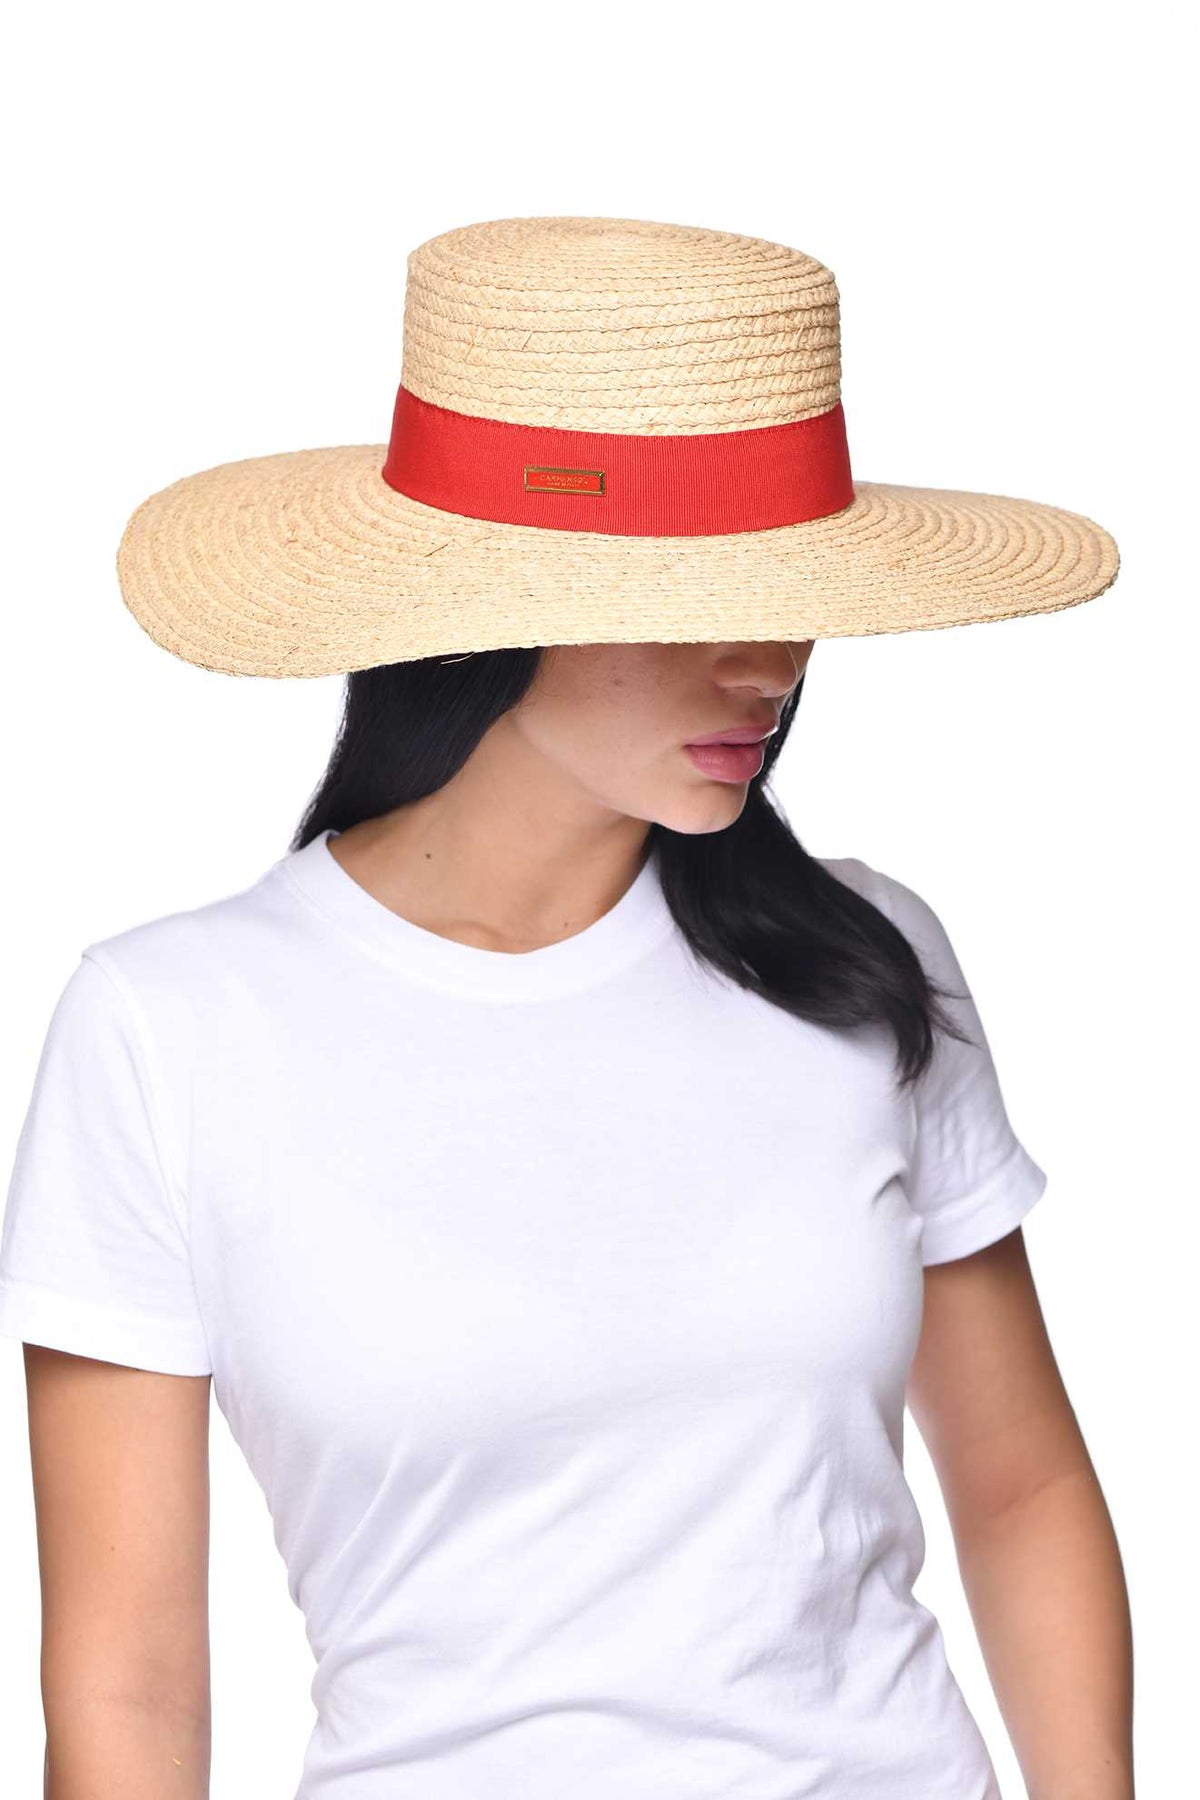 Women wearing Carmen Sol Mirtha raffia bucket hat in color red